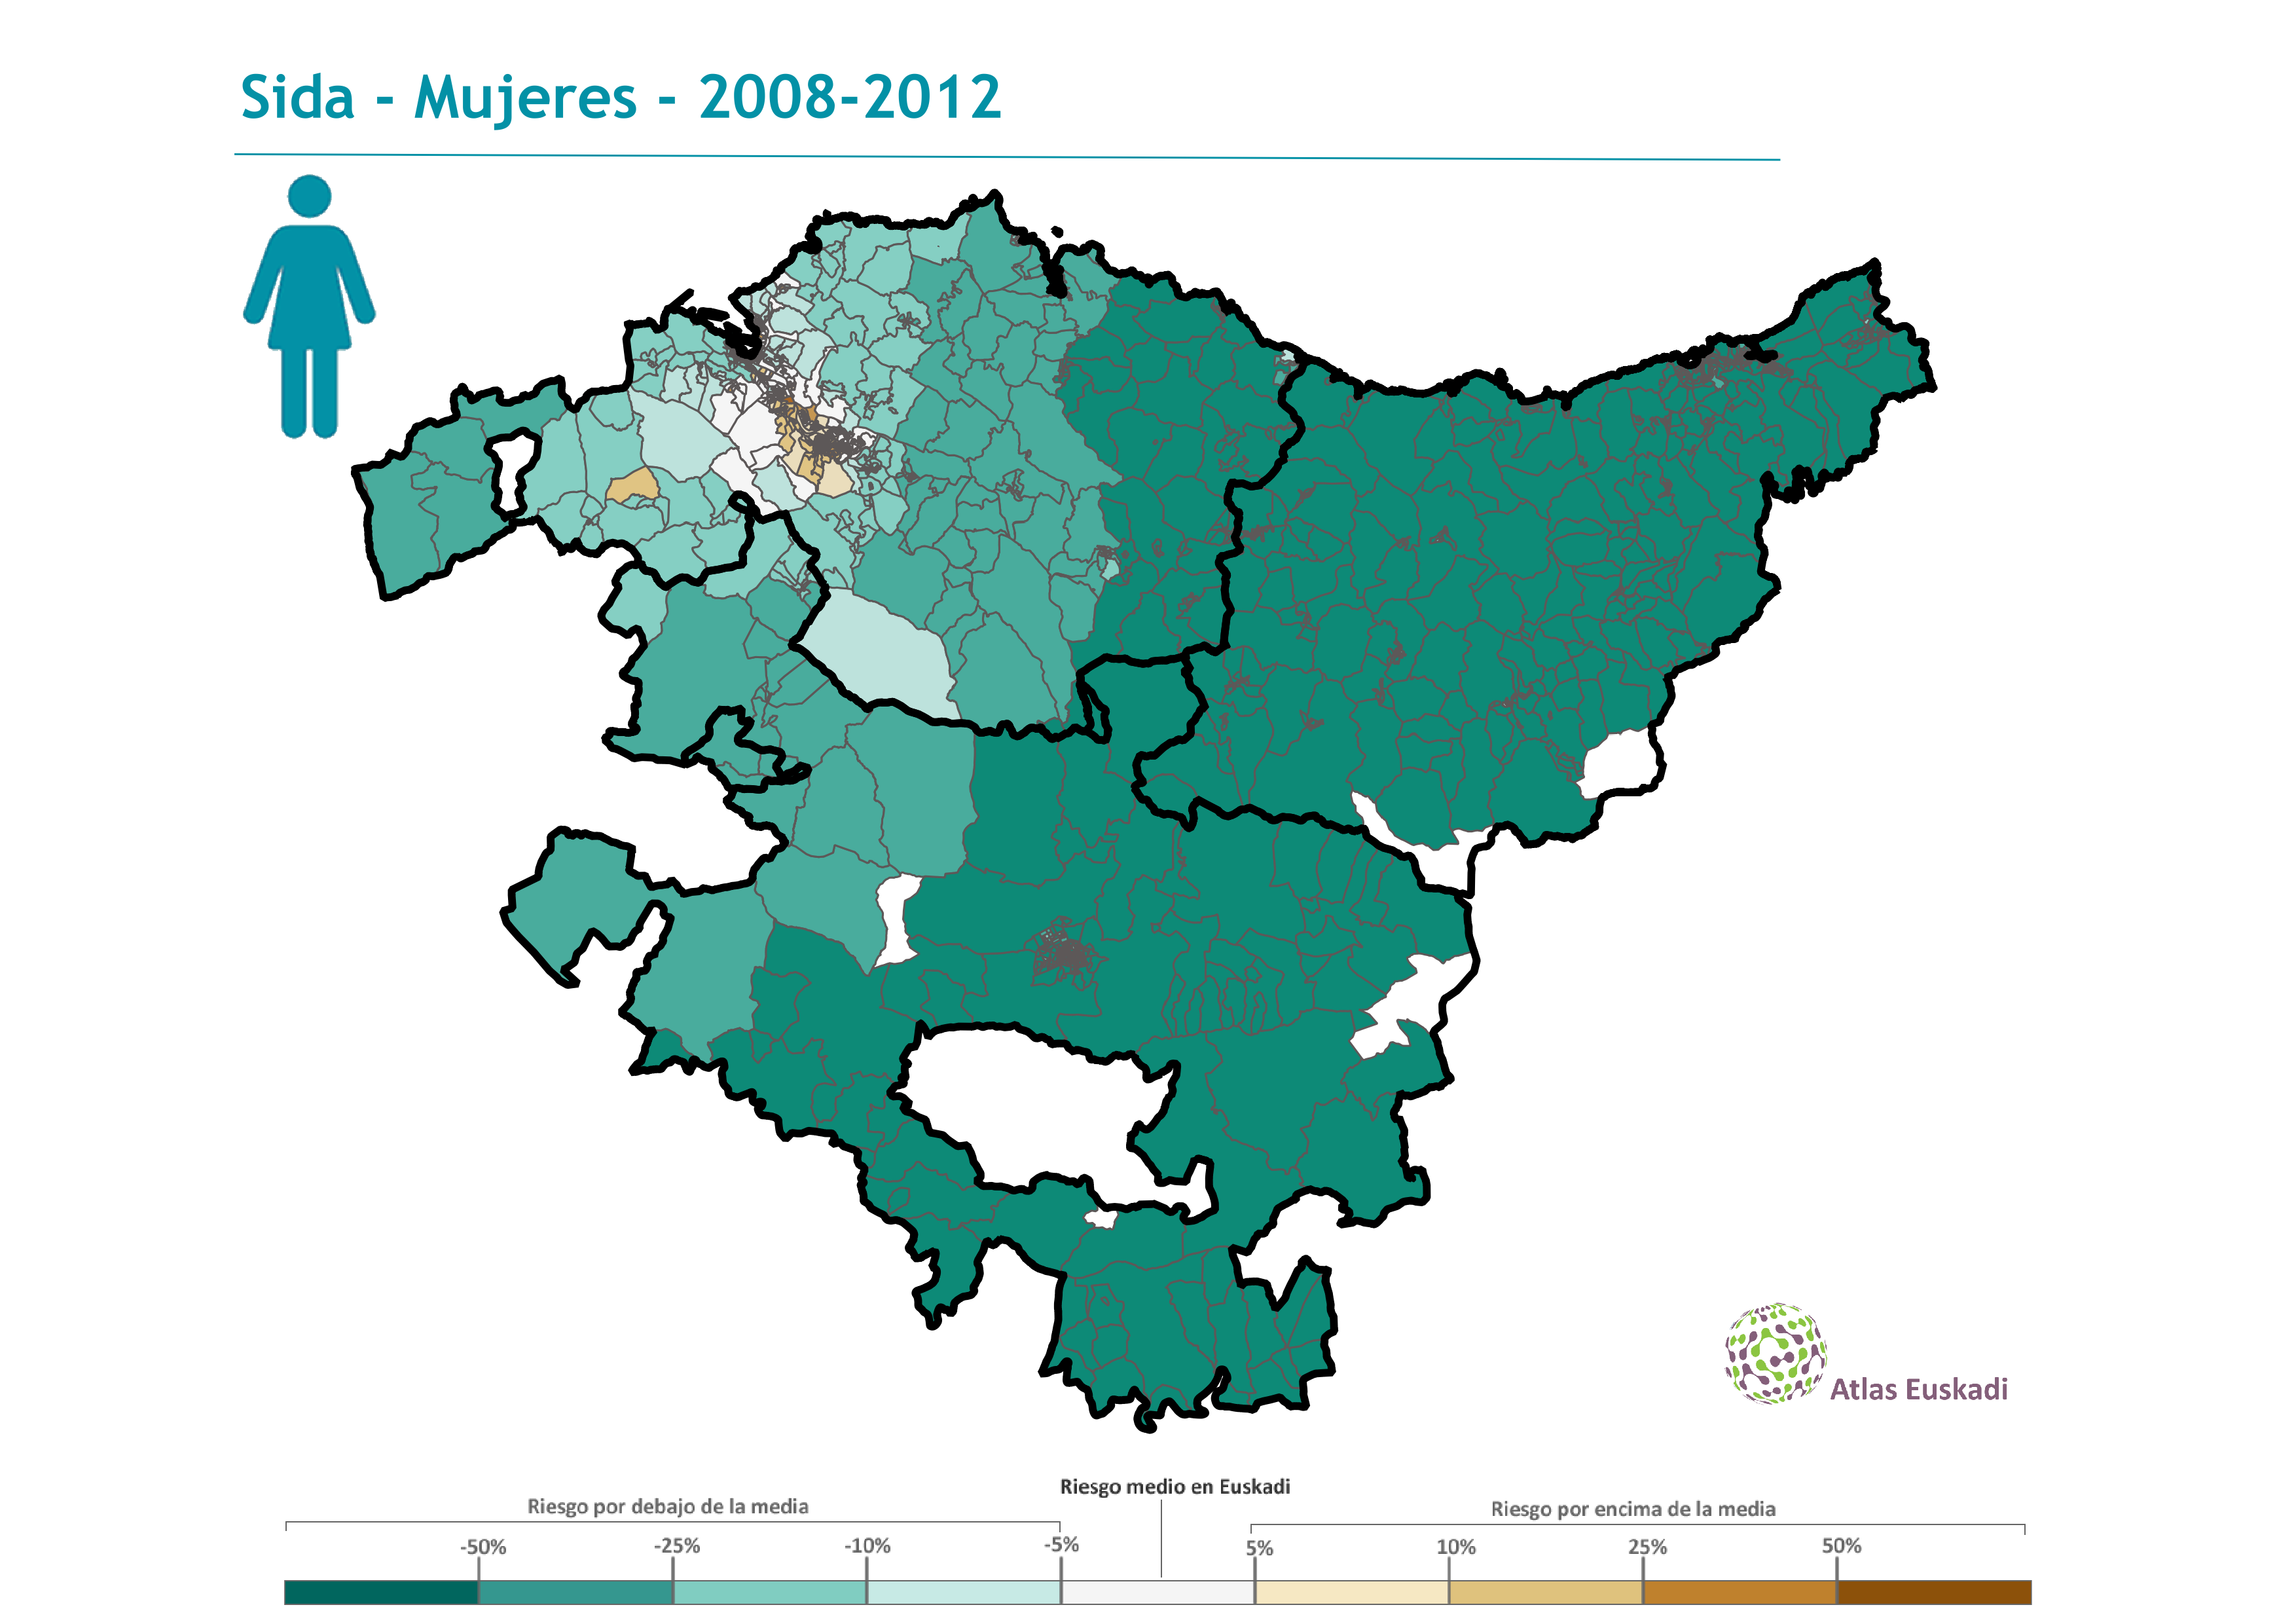 Sida mujeres  2008-2012 Euskadi